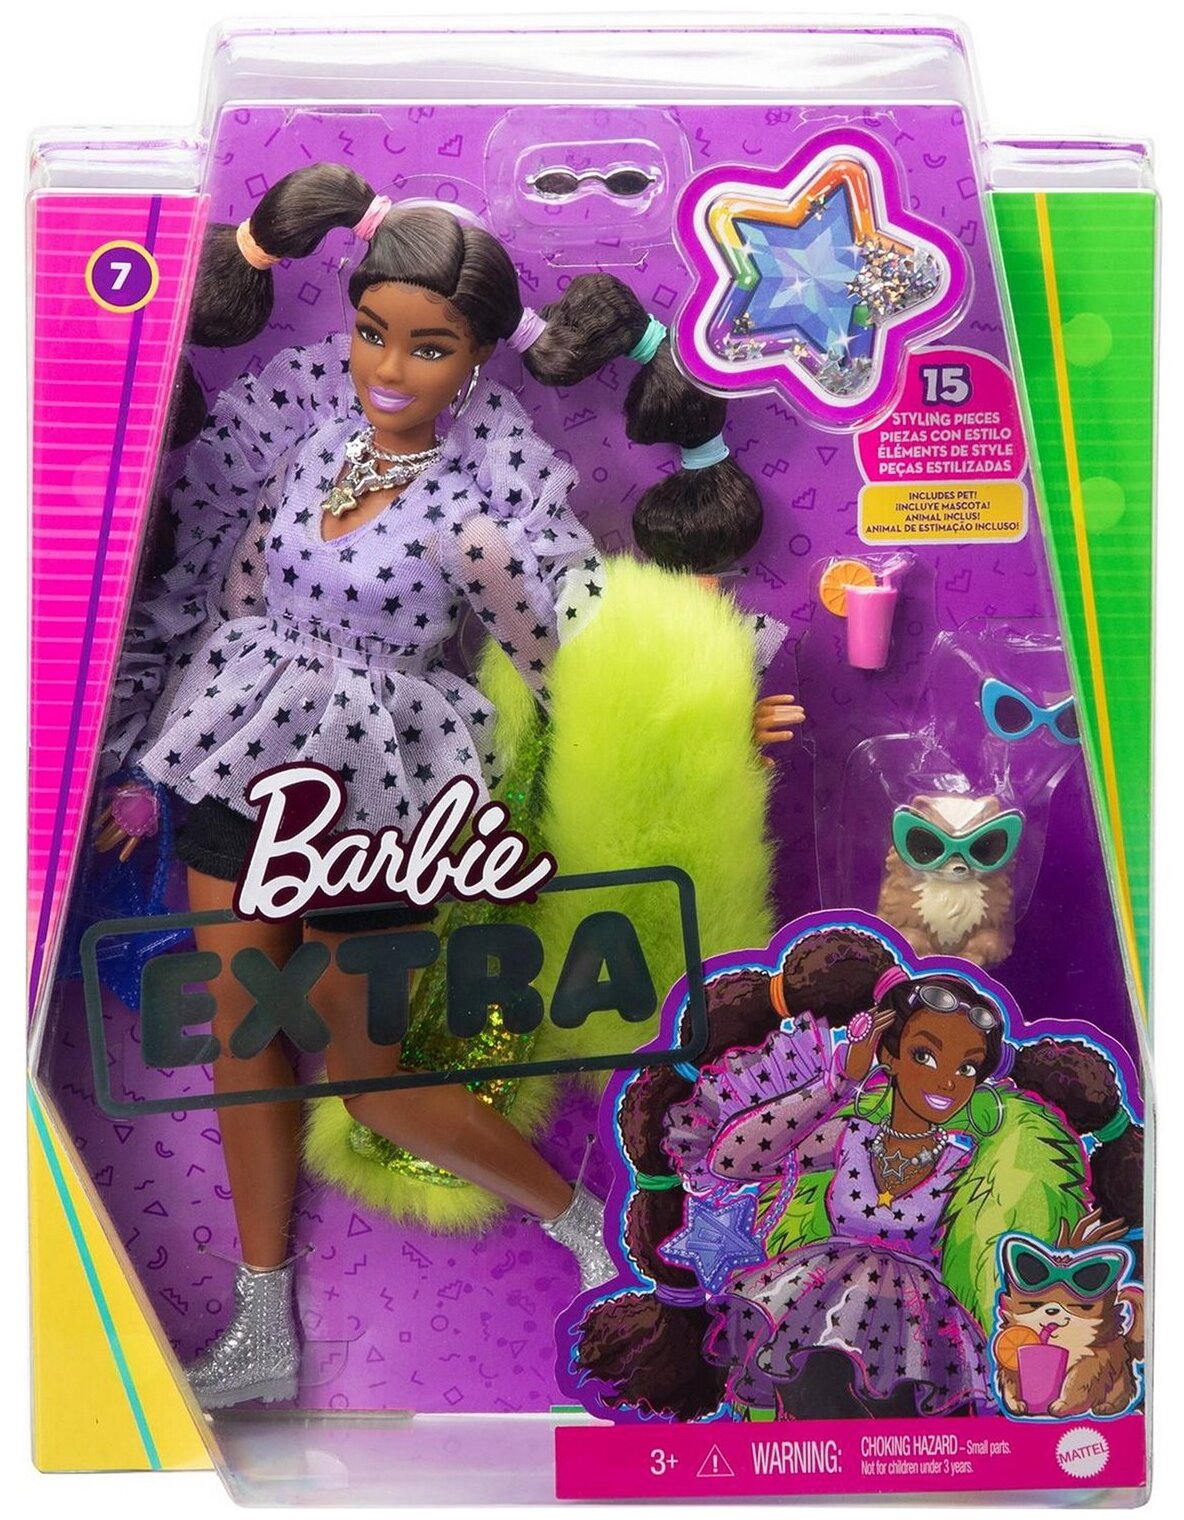 Barbie Кукла Экстра с переплетенными резинками хвостиками - фото №5